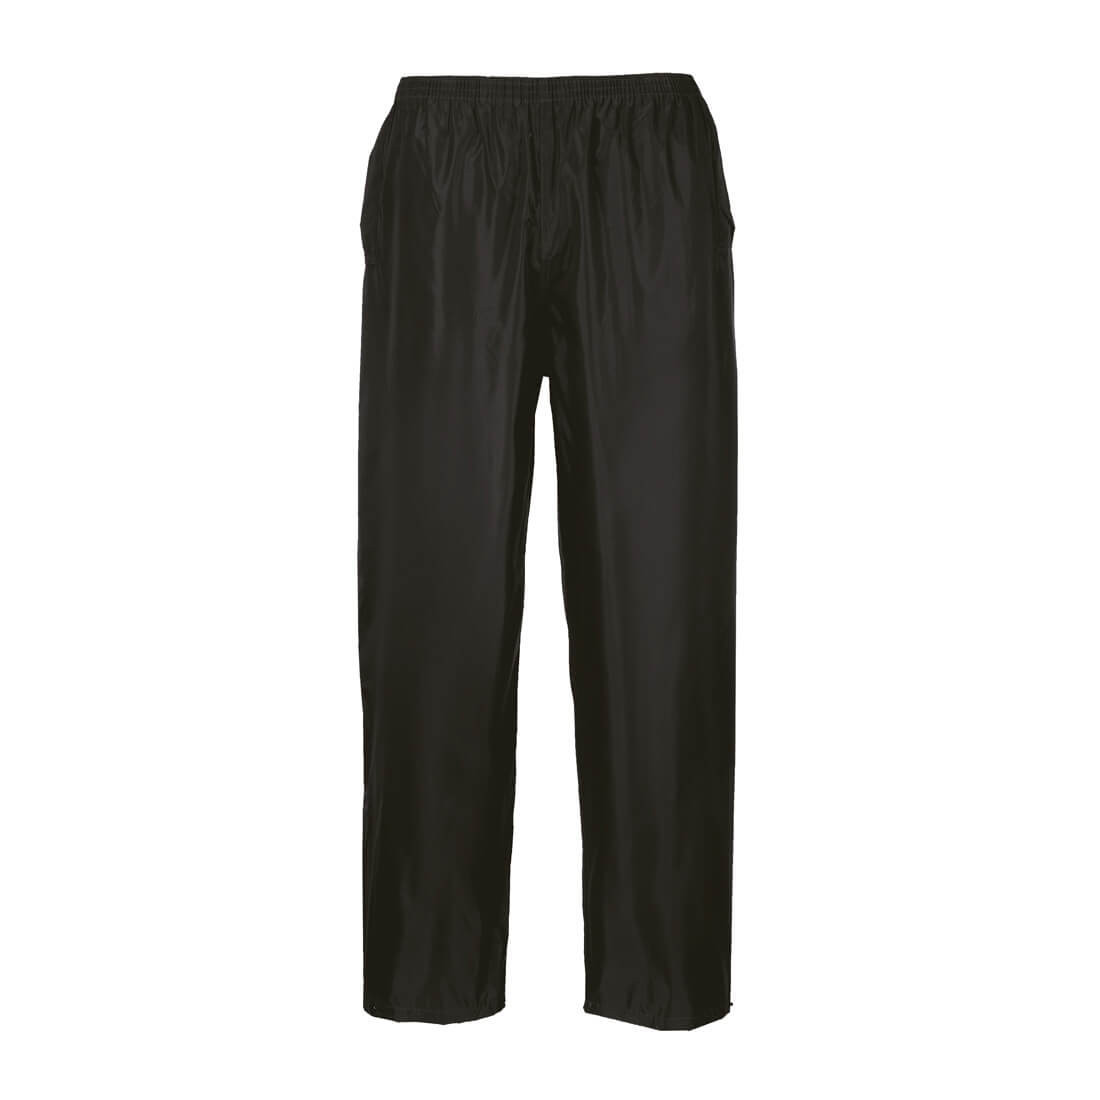 Pantaloni Classic adulto impermeabili - Abbigliamento di protezione